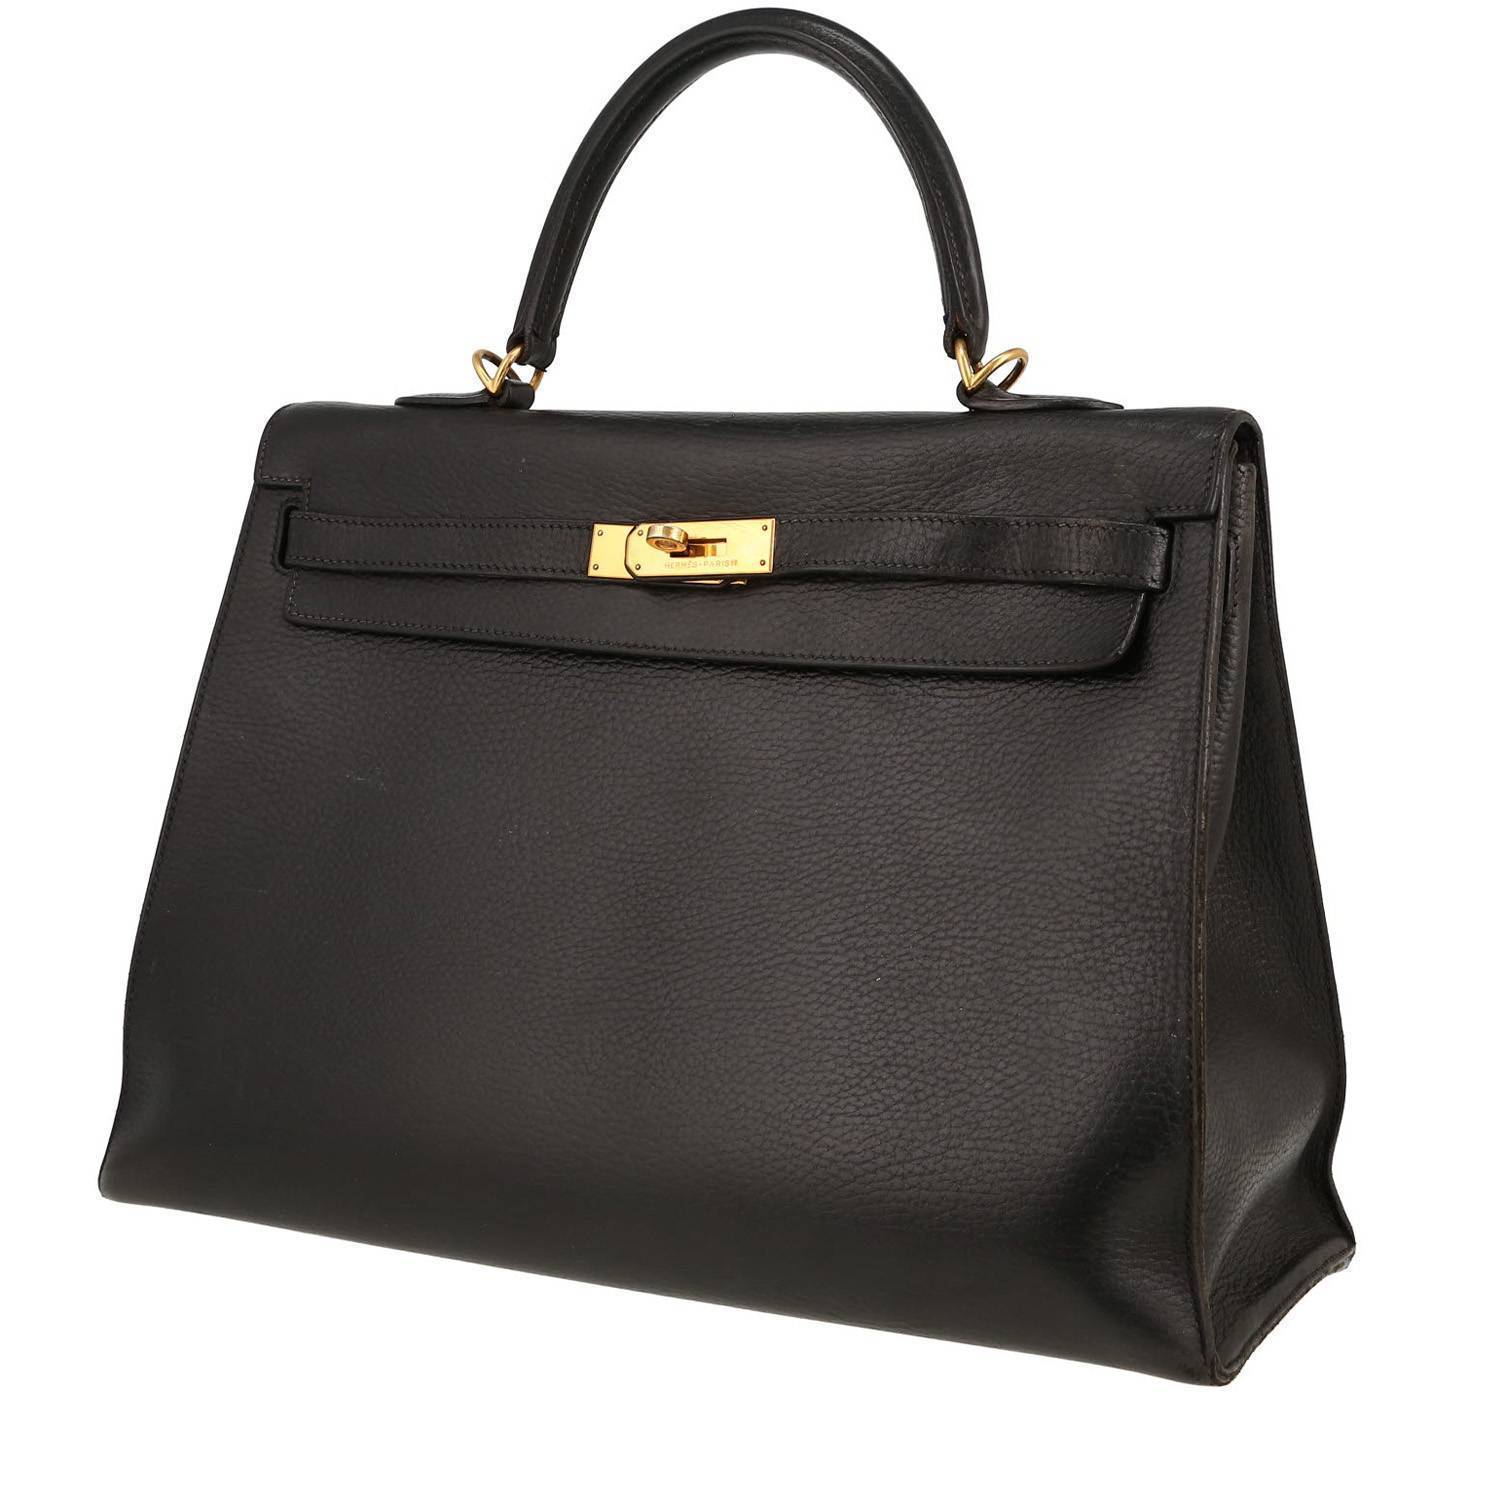 Kelly 35 cm Handbag In Black Ardenne Leather